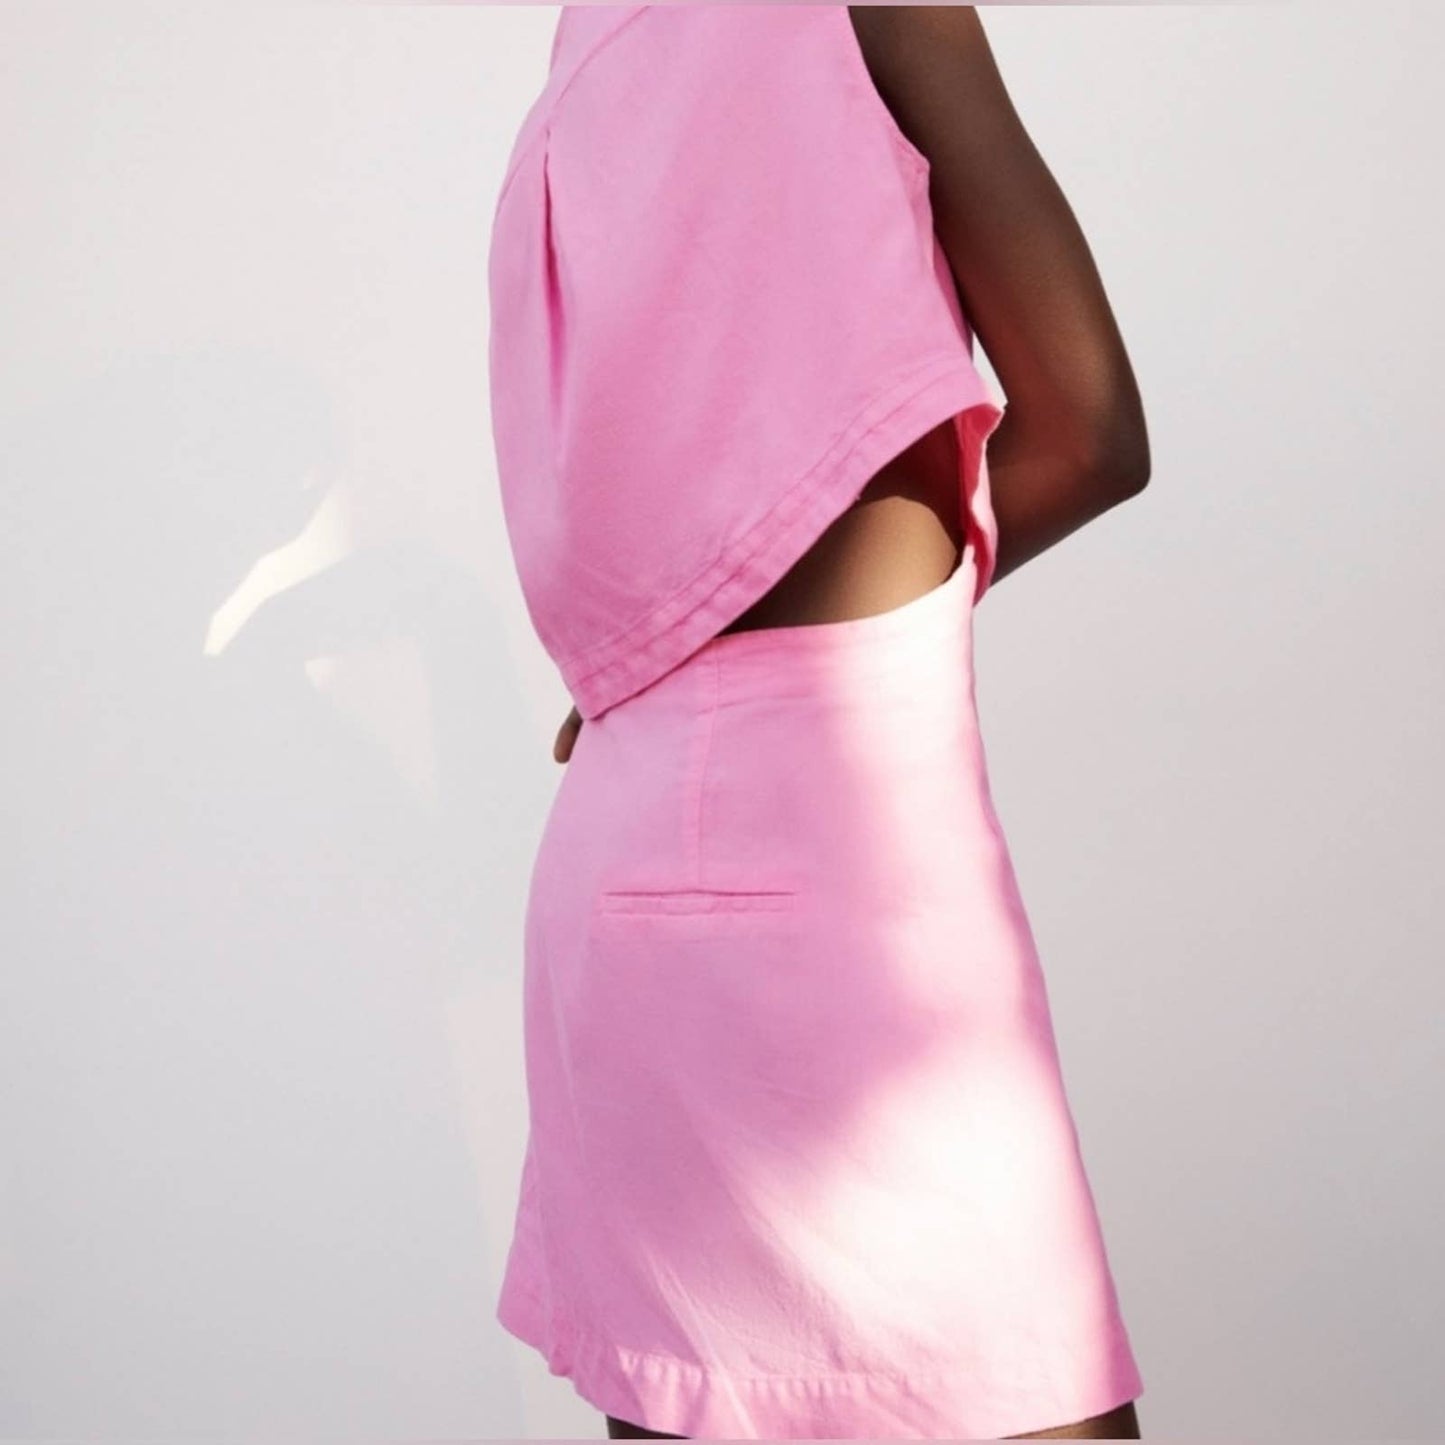 Zara Pink  Crop Open Back Linen Blend Dress XS